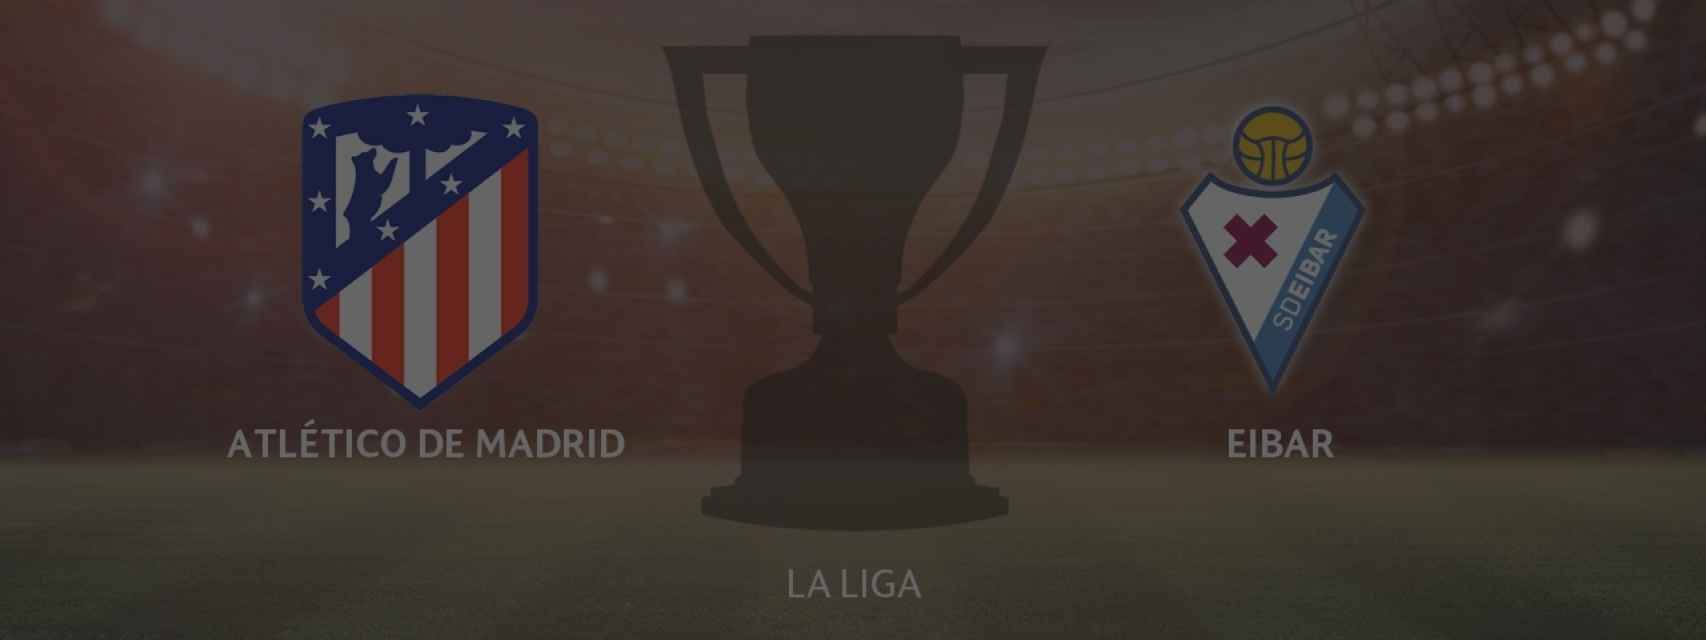 Atlético de Madrid - Eibar, partido de La Liga